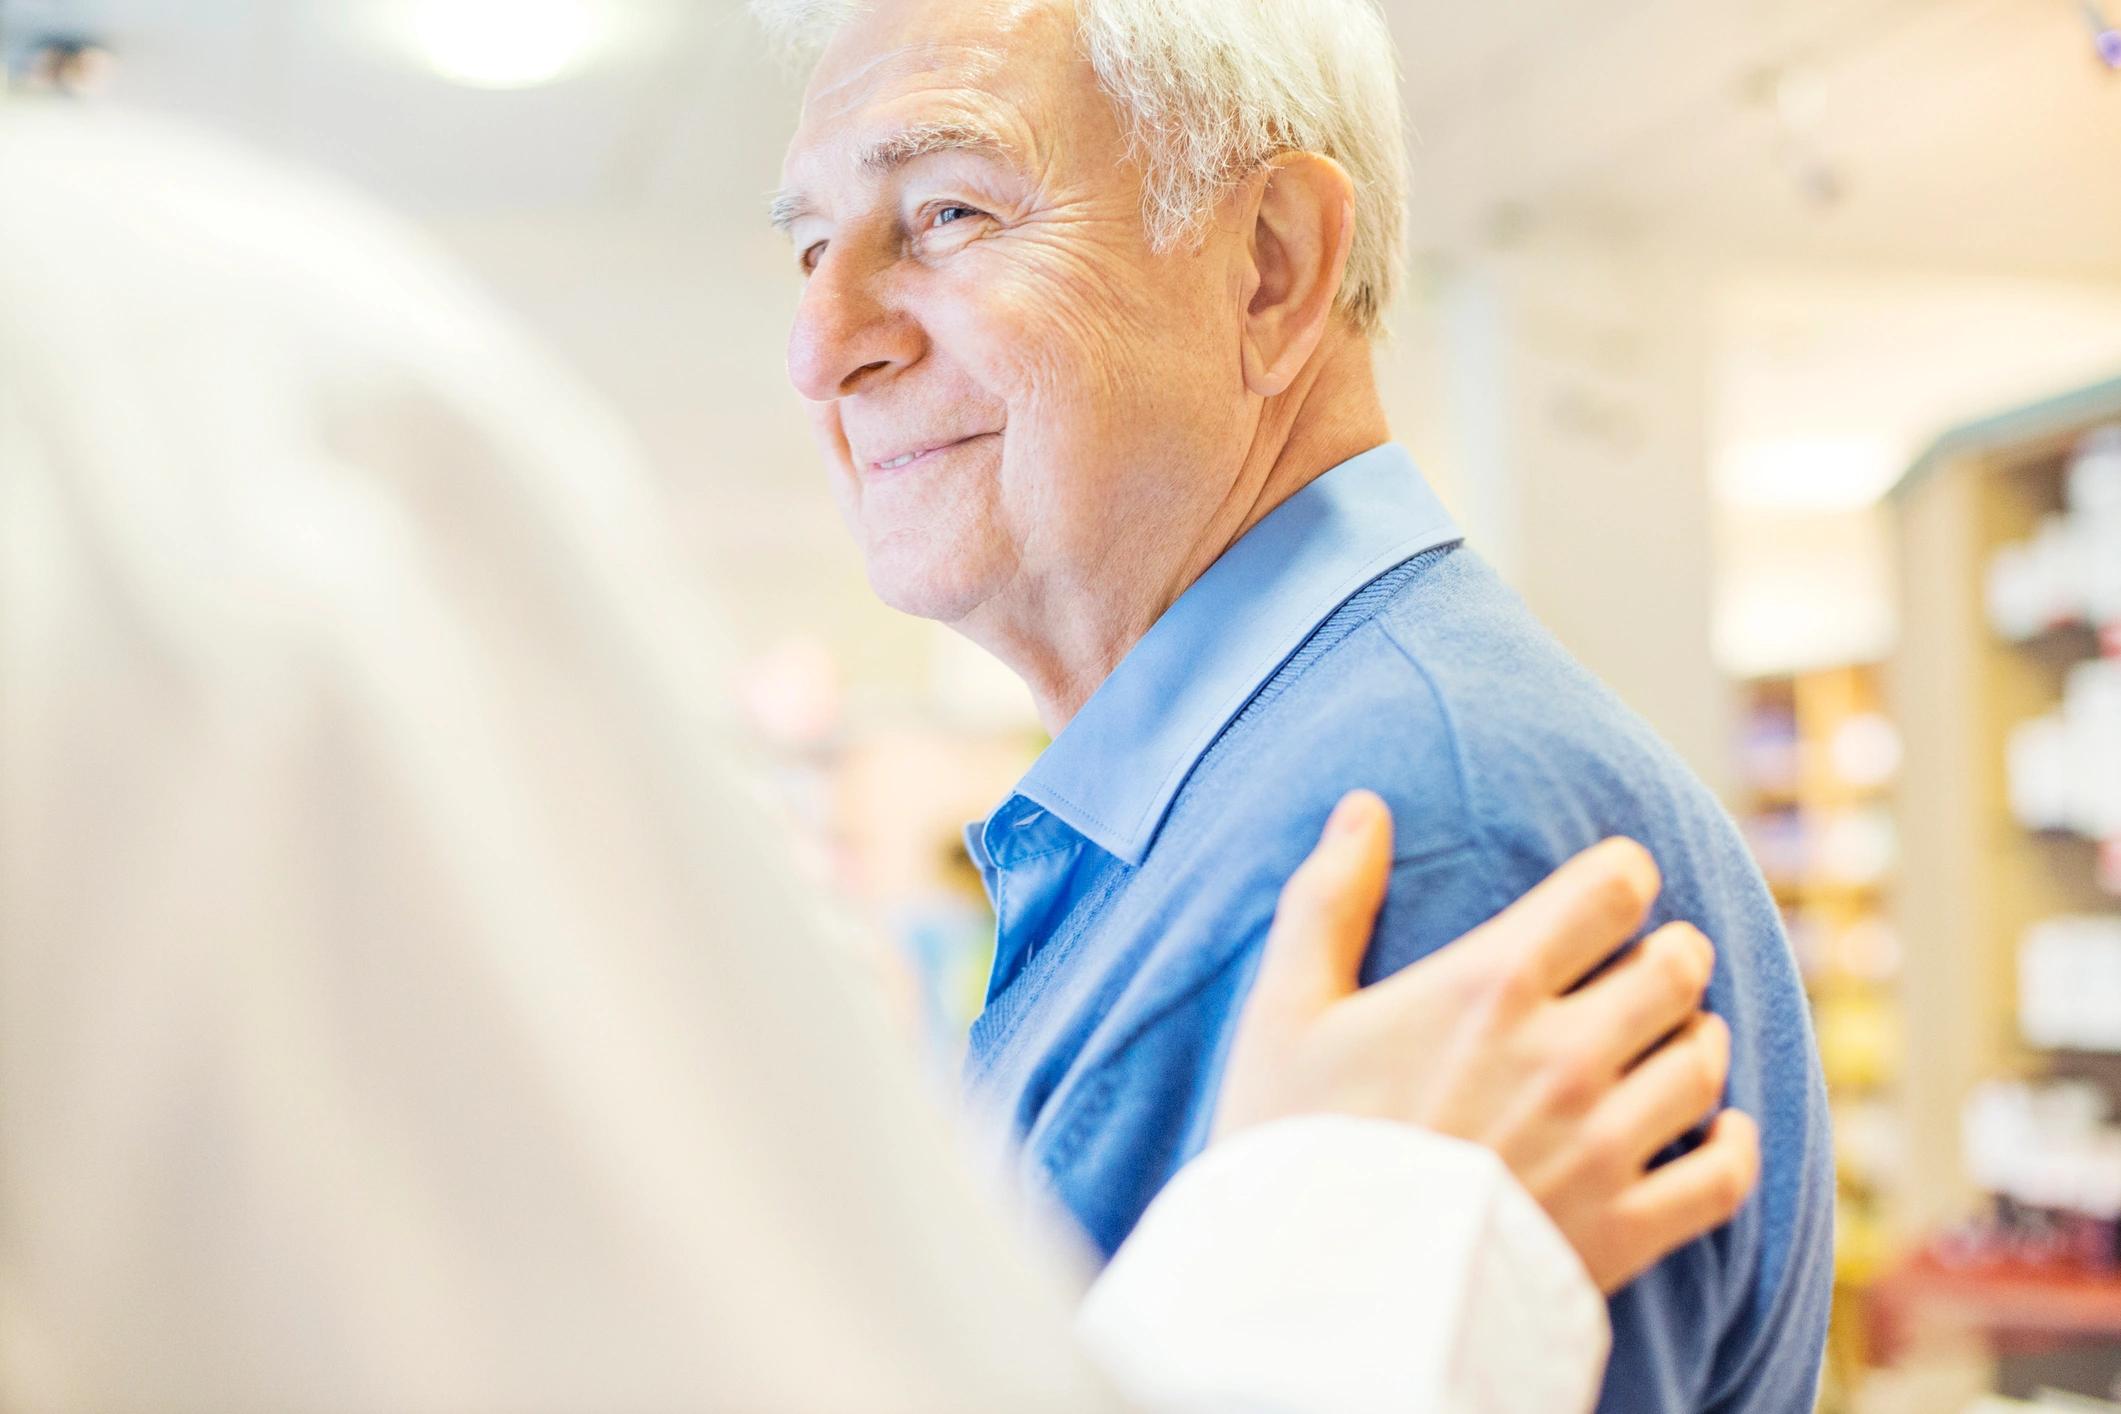 Das Bild zeigt einen Arzt der einem älteren Patienten eine Hand auf den Arm legt.